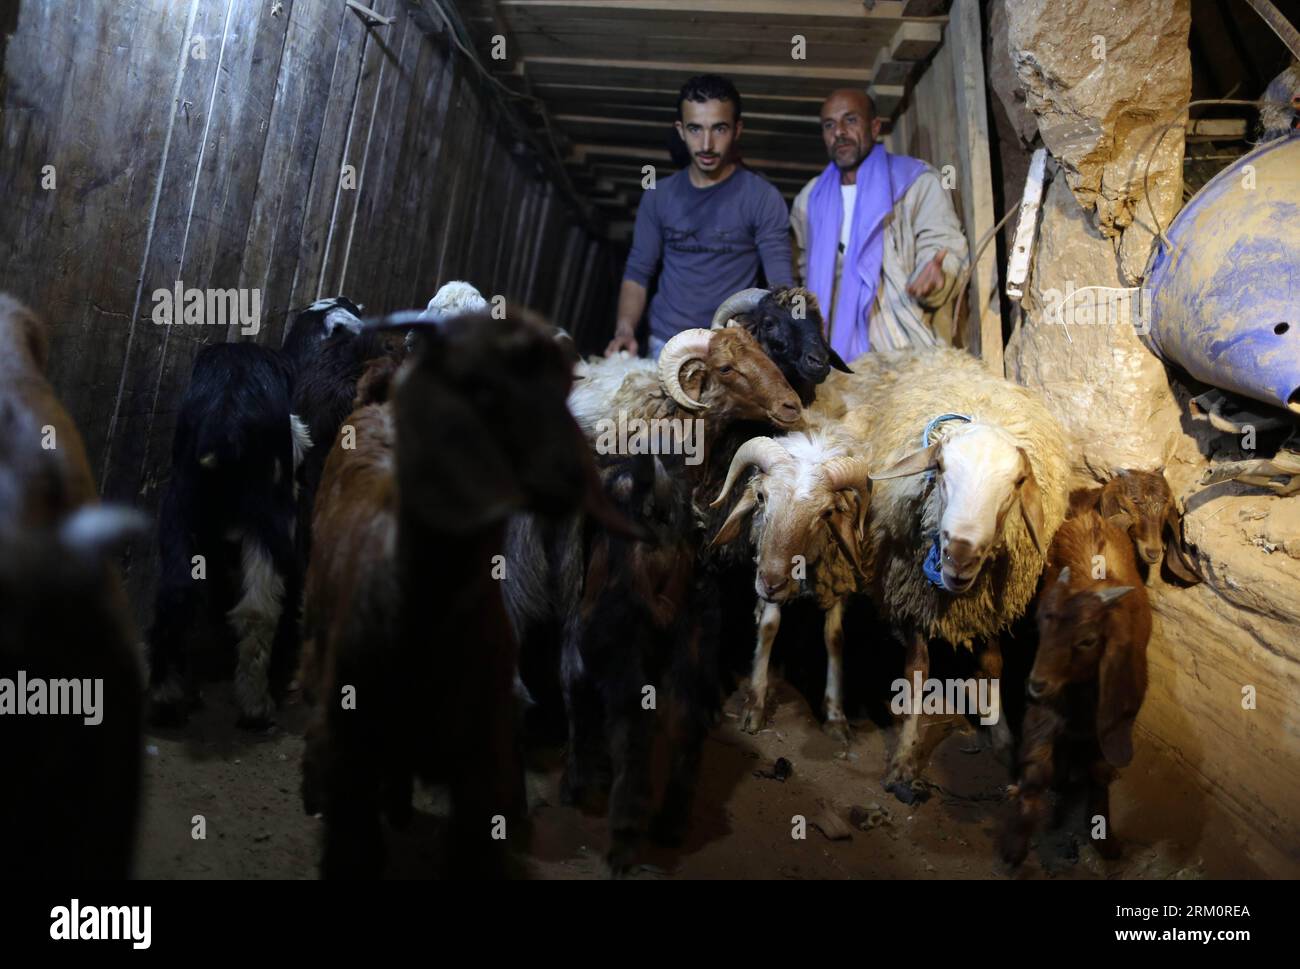 Bildnummer: 59466525 Datum: 02.04.2013 Copyright: imago/Xinhua (130402) -- GAZA, 2. April 2013 (Xinhua) -- Palästinenser treiben Schafe durch einen Schleusertunnel zwischen dem von der Hamas regierten Gazastreifen und Ägypten im südlichen Gazastreifen Rafah am 2. April 2013. Die ägyptische Armee begann im vergangenen Monat mit der Niederschlagung von Tunneln für den Schmuggel in Gaza, nachdem ein hoher ägyptischer Hof die Behörden in Kairo aufgefordert hatte, alle Tunnel entlang der Grenze zwischen Gaza und Ägypten niederzureißen. (Xinhua/Wissam Nassar) (djj) MIDEAST-GAZA-SCHMUGGELTUNNEL PUBLICATIONxNOTxINxCHN Gesellschaft Gaza Gazastreifen Palästina Schm Stockfoto